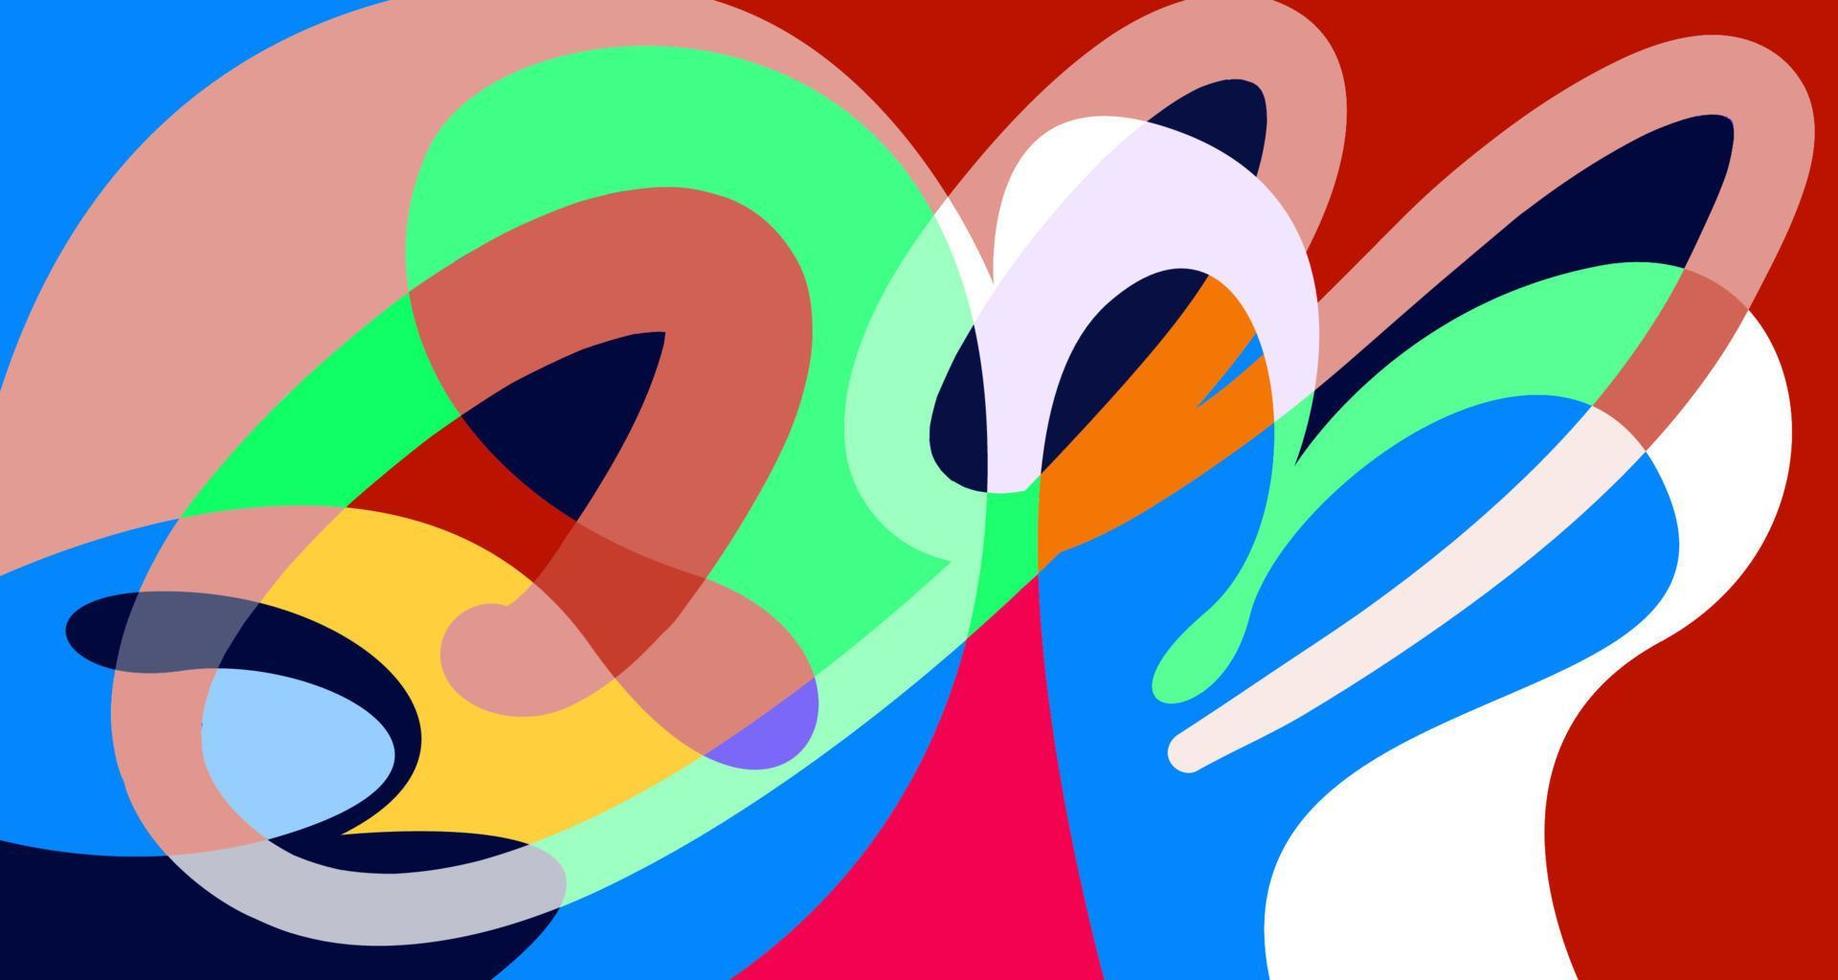 vector kleurrijke abstracte psychedelische vloeistof en vloeistof achtergrondpatroon